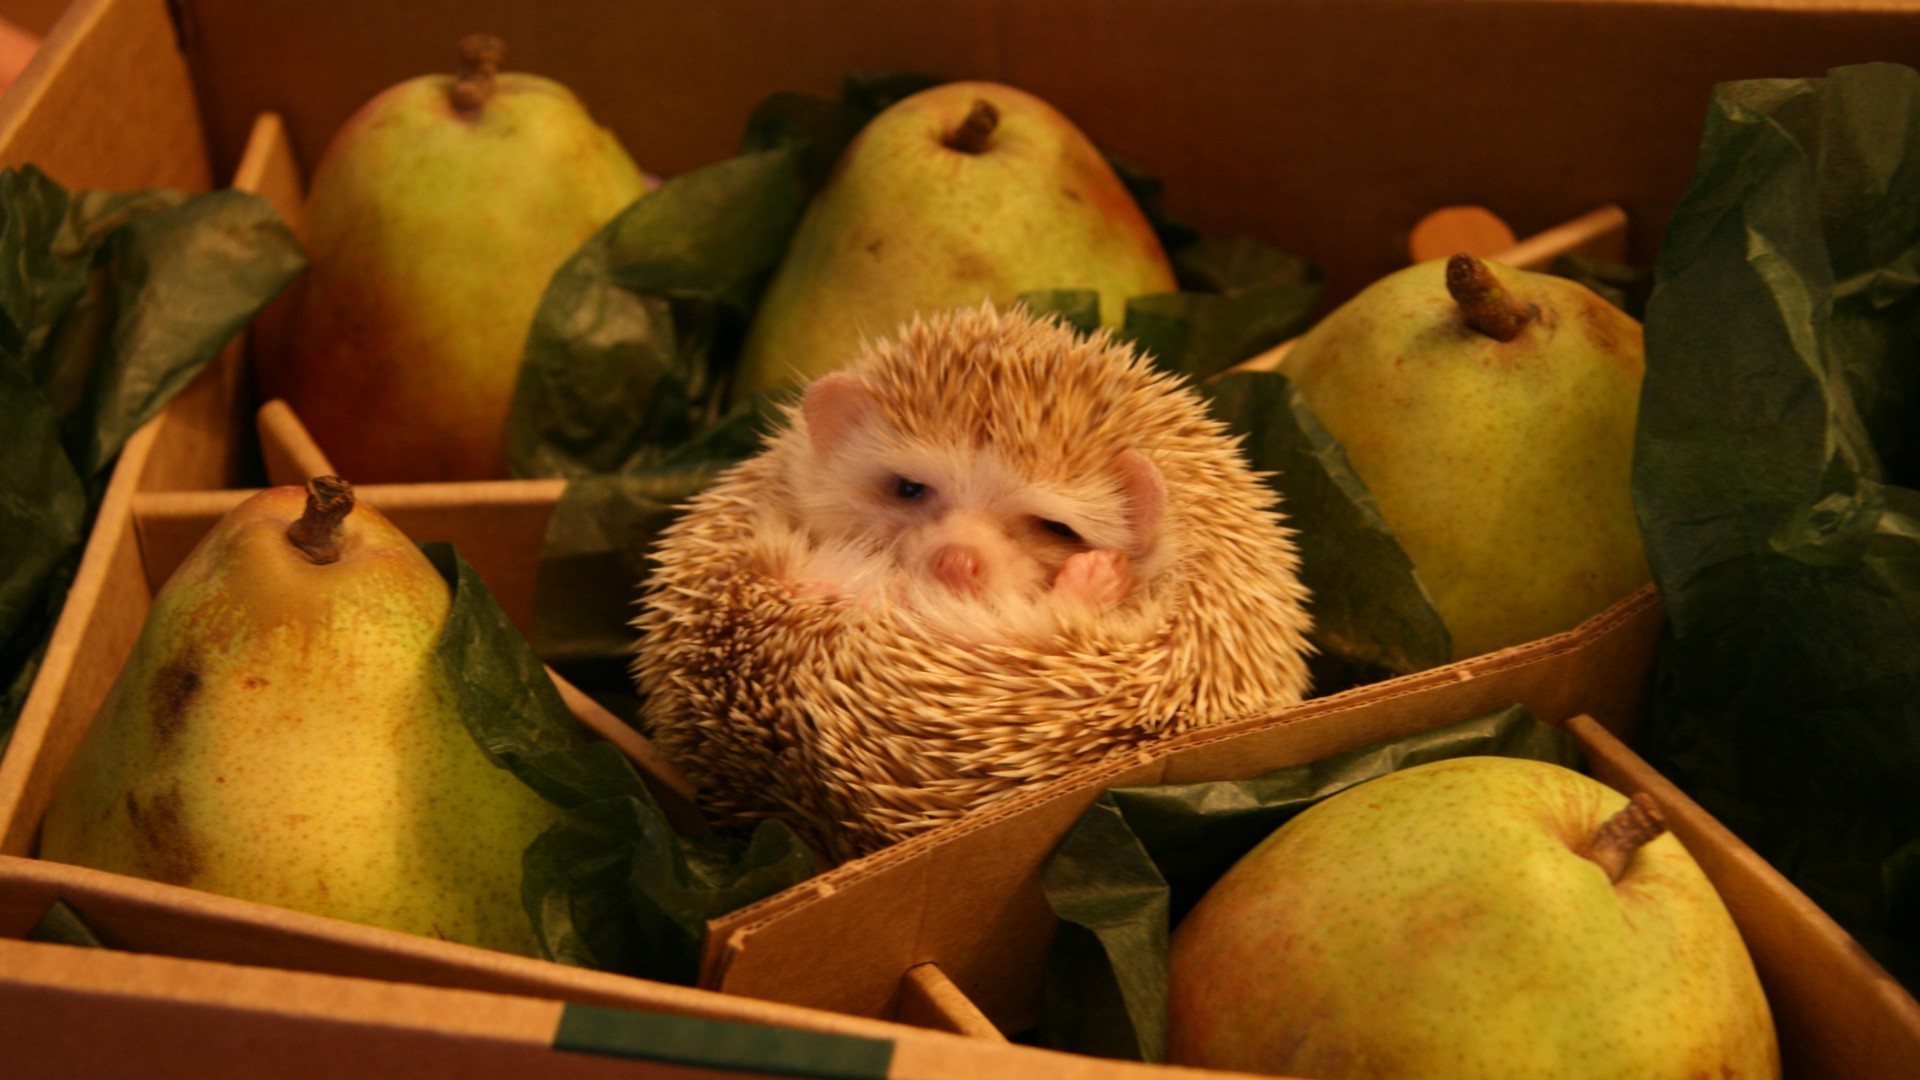 животные расти еда фрукты яблоко натюрморт один в помещении рынок